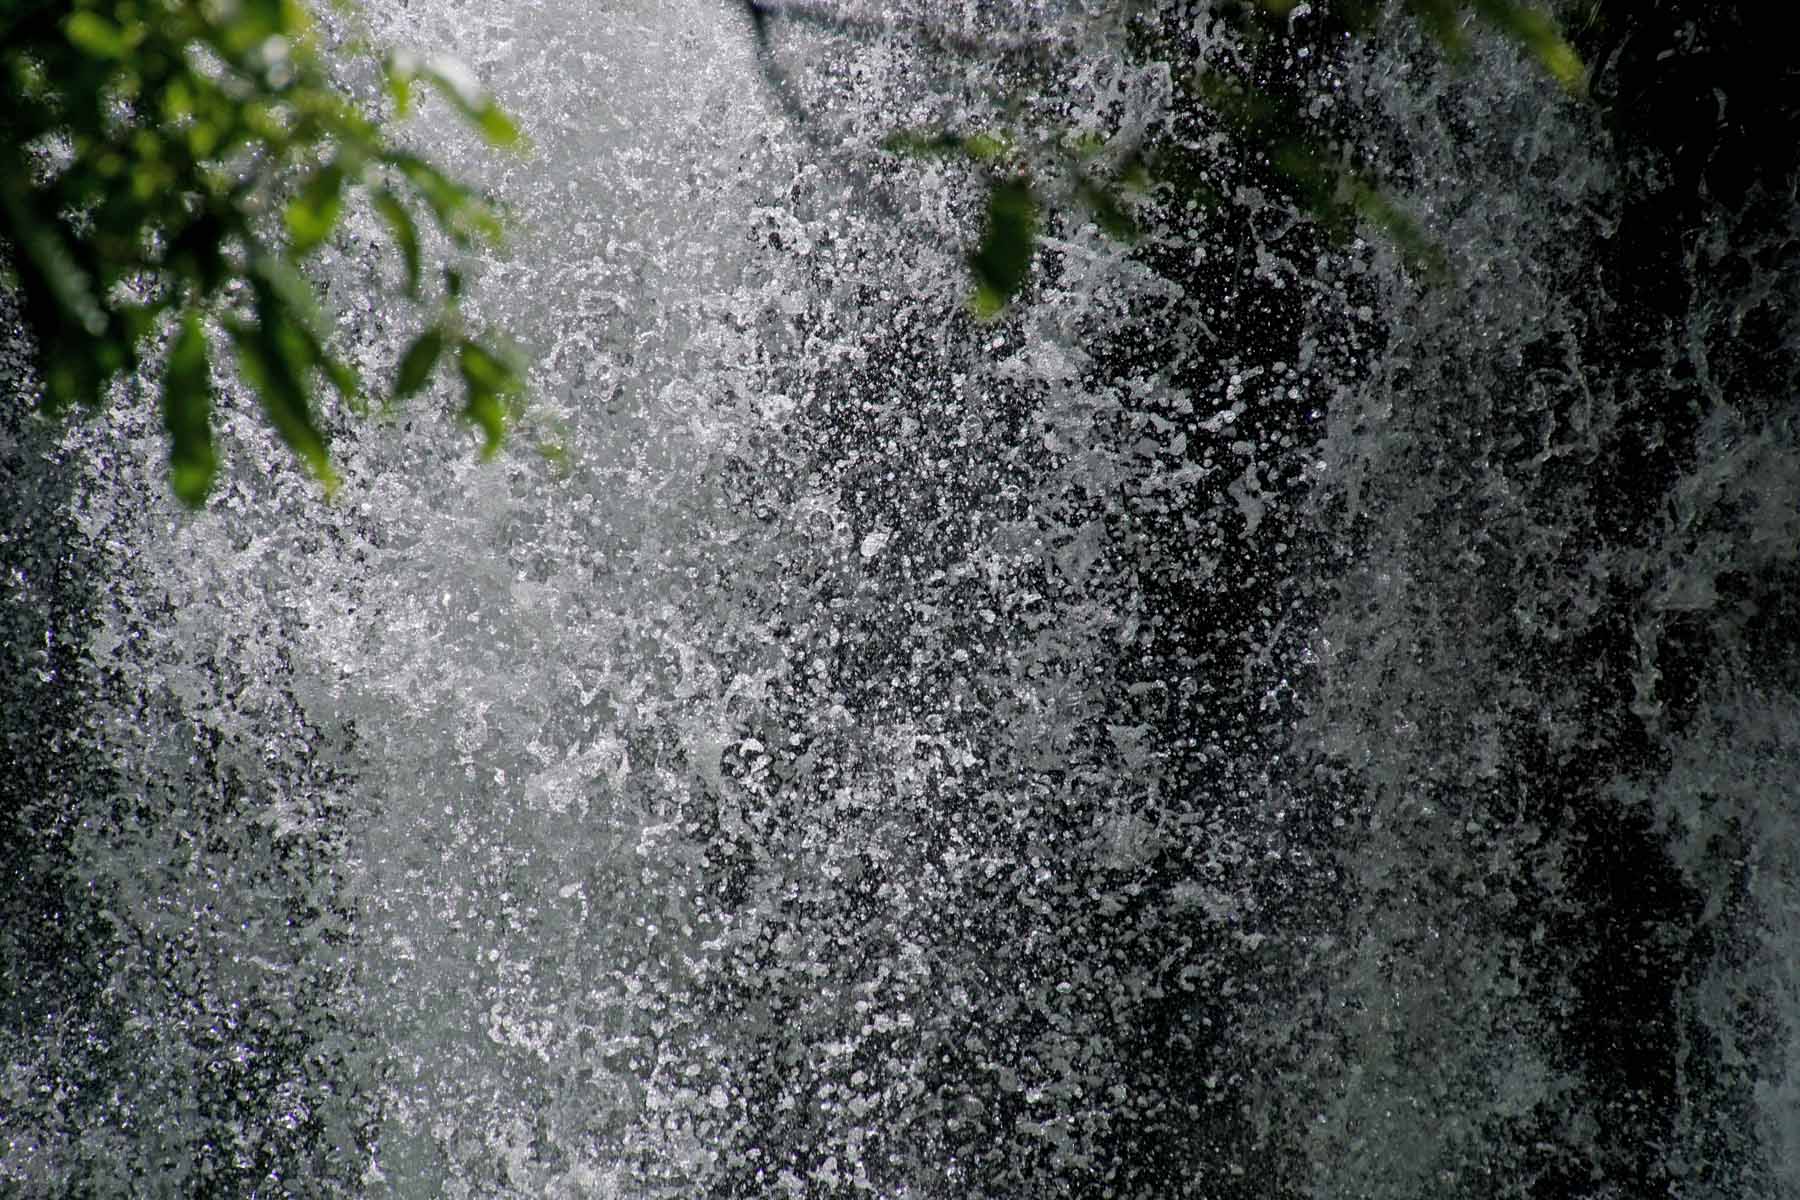 Waitanguru Falls